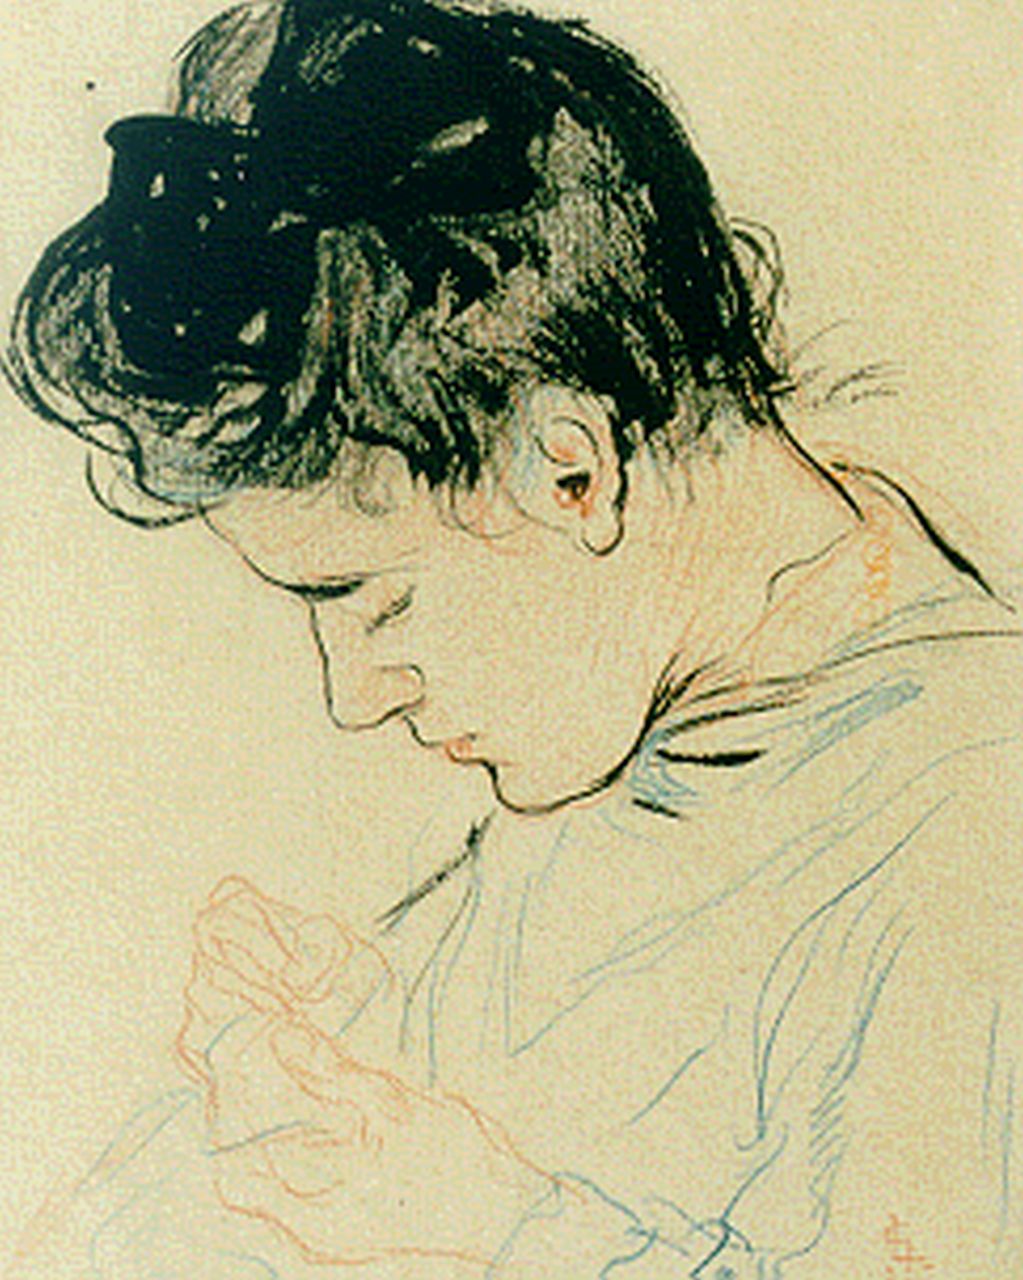 Gestel L.  | Leendert 'Leo' Gestel, Portret van Antje, zuster van de schilder, inkt en kleurpotlood op papier 17,0 x 13,5 cm, gesigneerd rechtsonder monogram